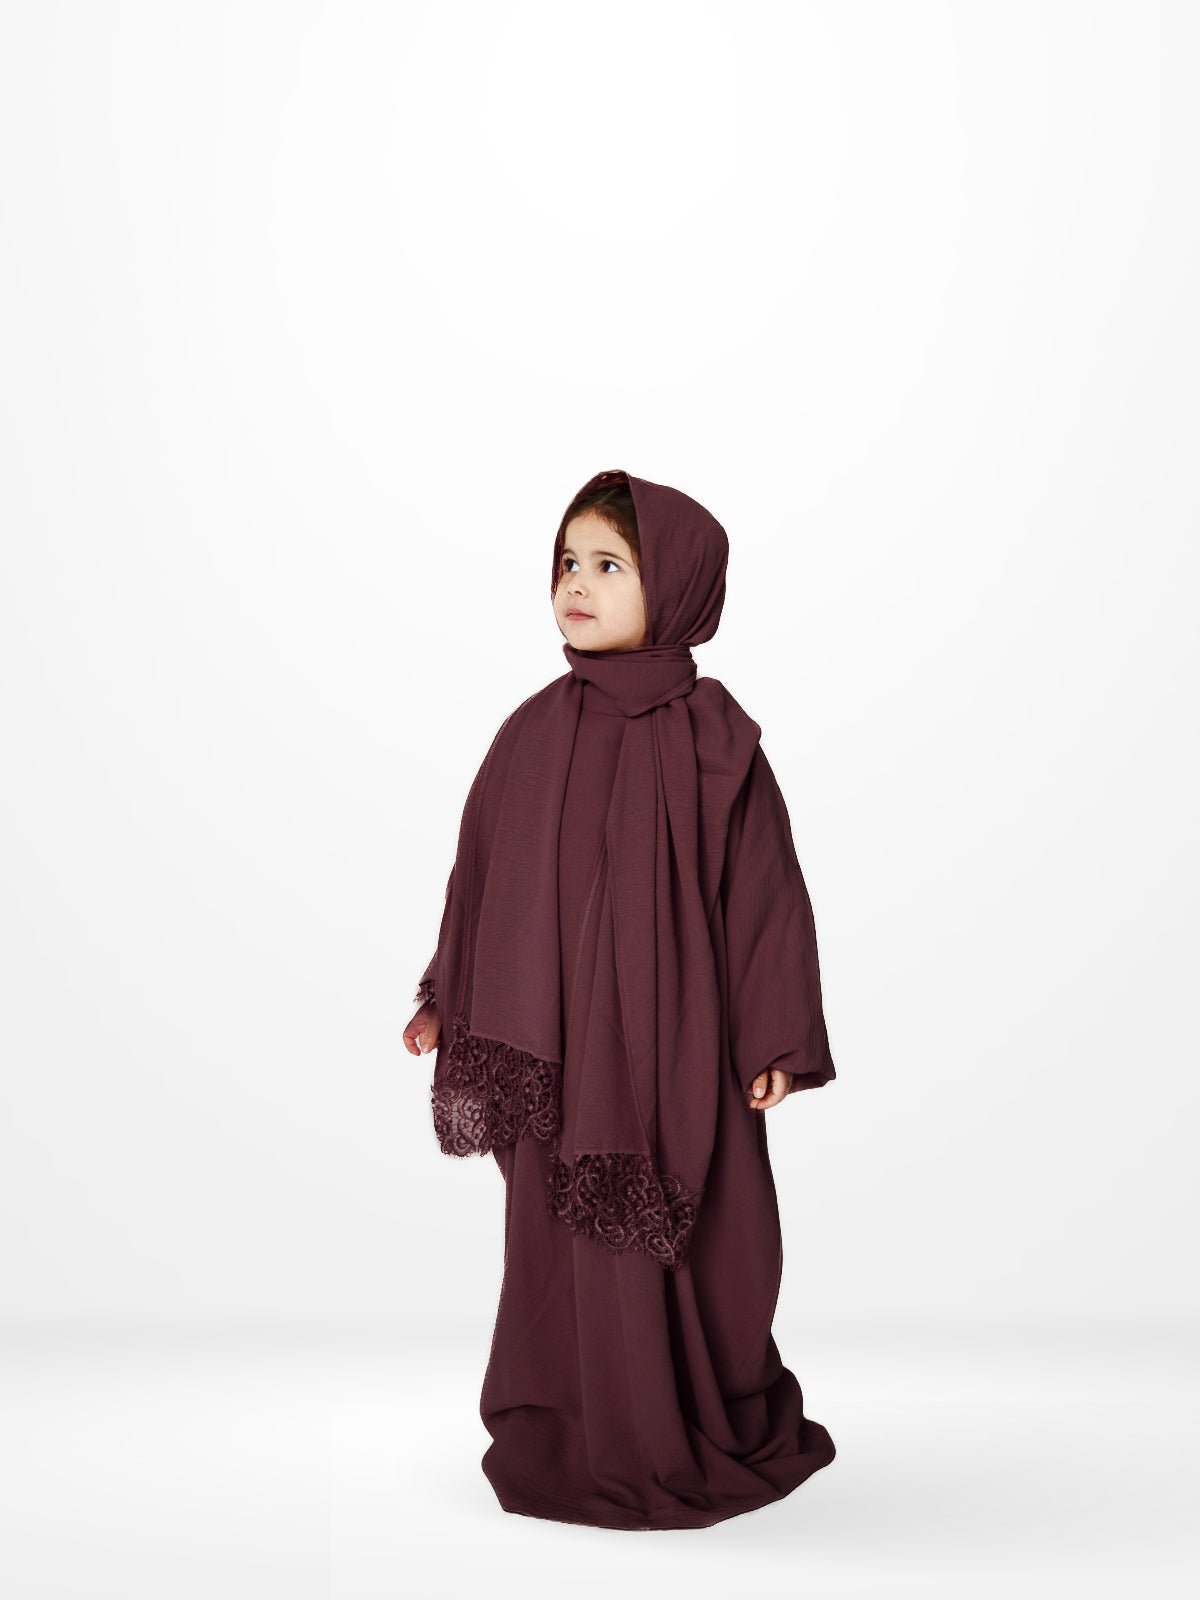 One-Piece Prayer Dress & Abaya with attached Hijab - Plain Girls Size - Modest Essence